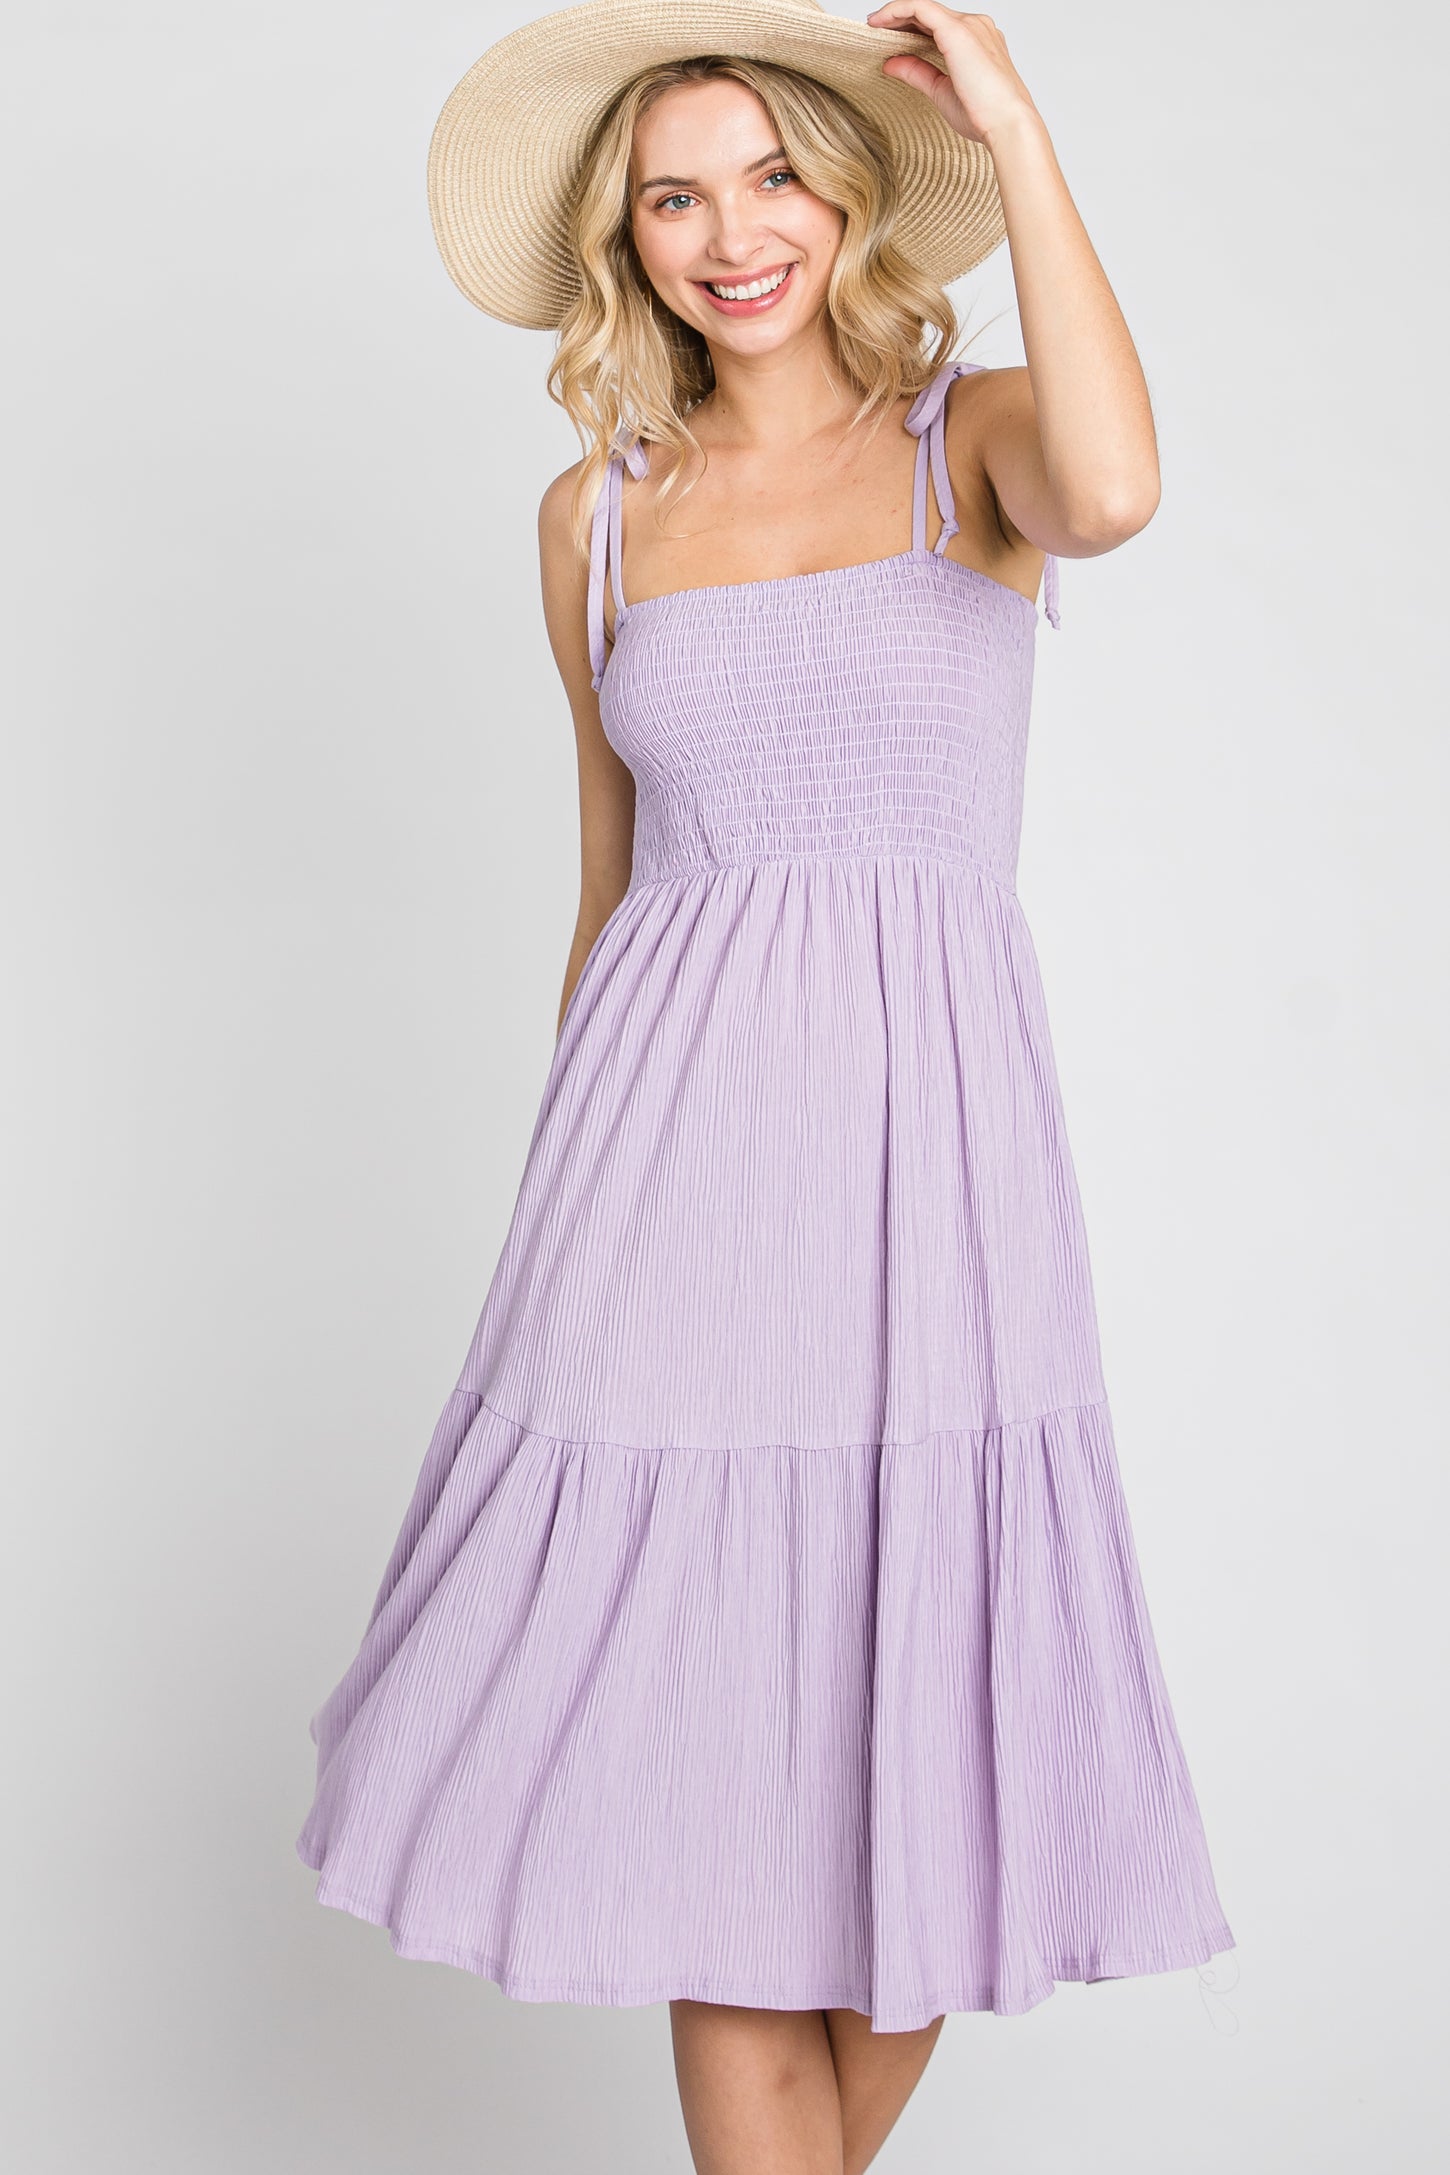 Lavender Smocked Shoulder Tie Maternity Dress